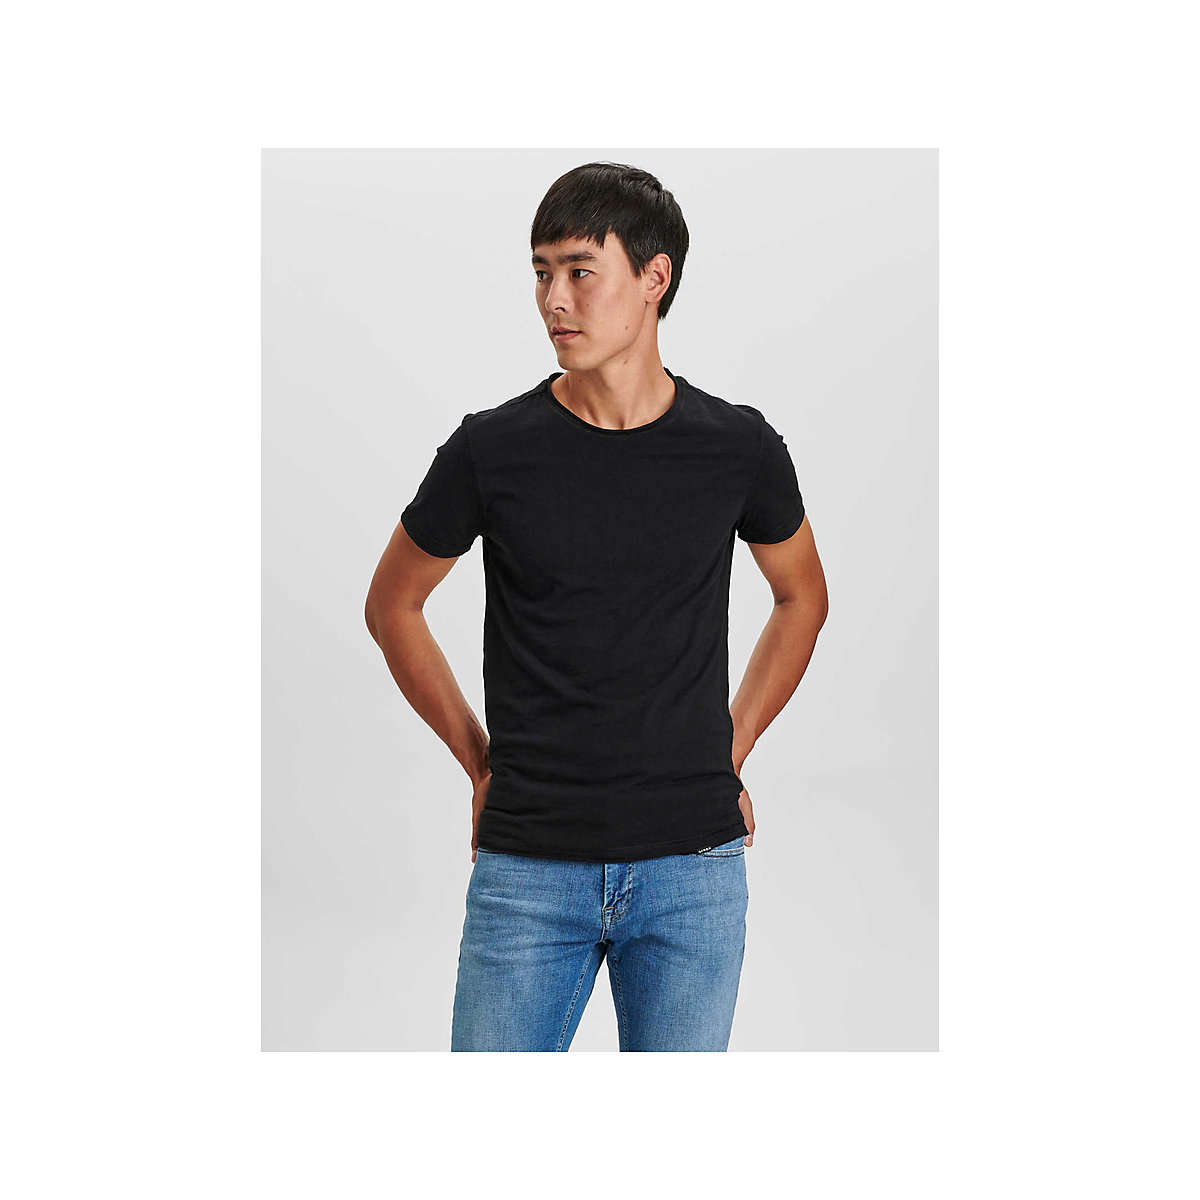 Rundhals T-Shirt schwarz